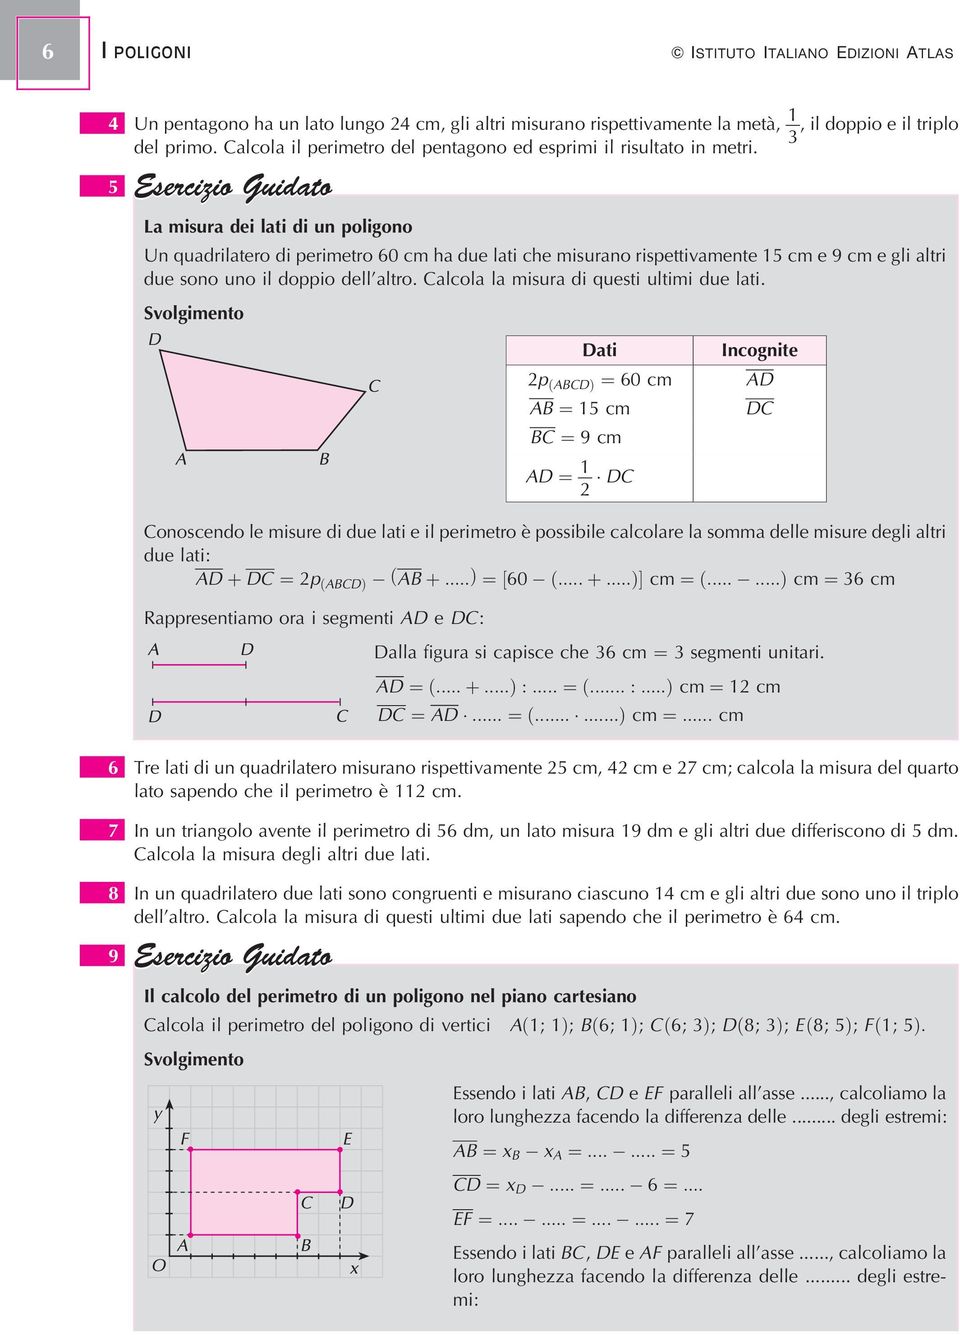 La misura dei lati di un poligono Un quadrilatero di perimetro 60 cm ha due lati che misurano rispettivamente 1 cm e 9 cm e gli altri due sono uno il doppio dell'altro.